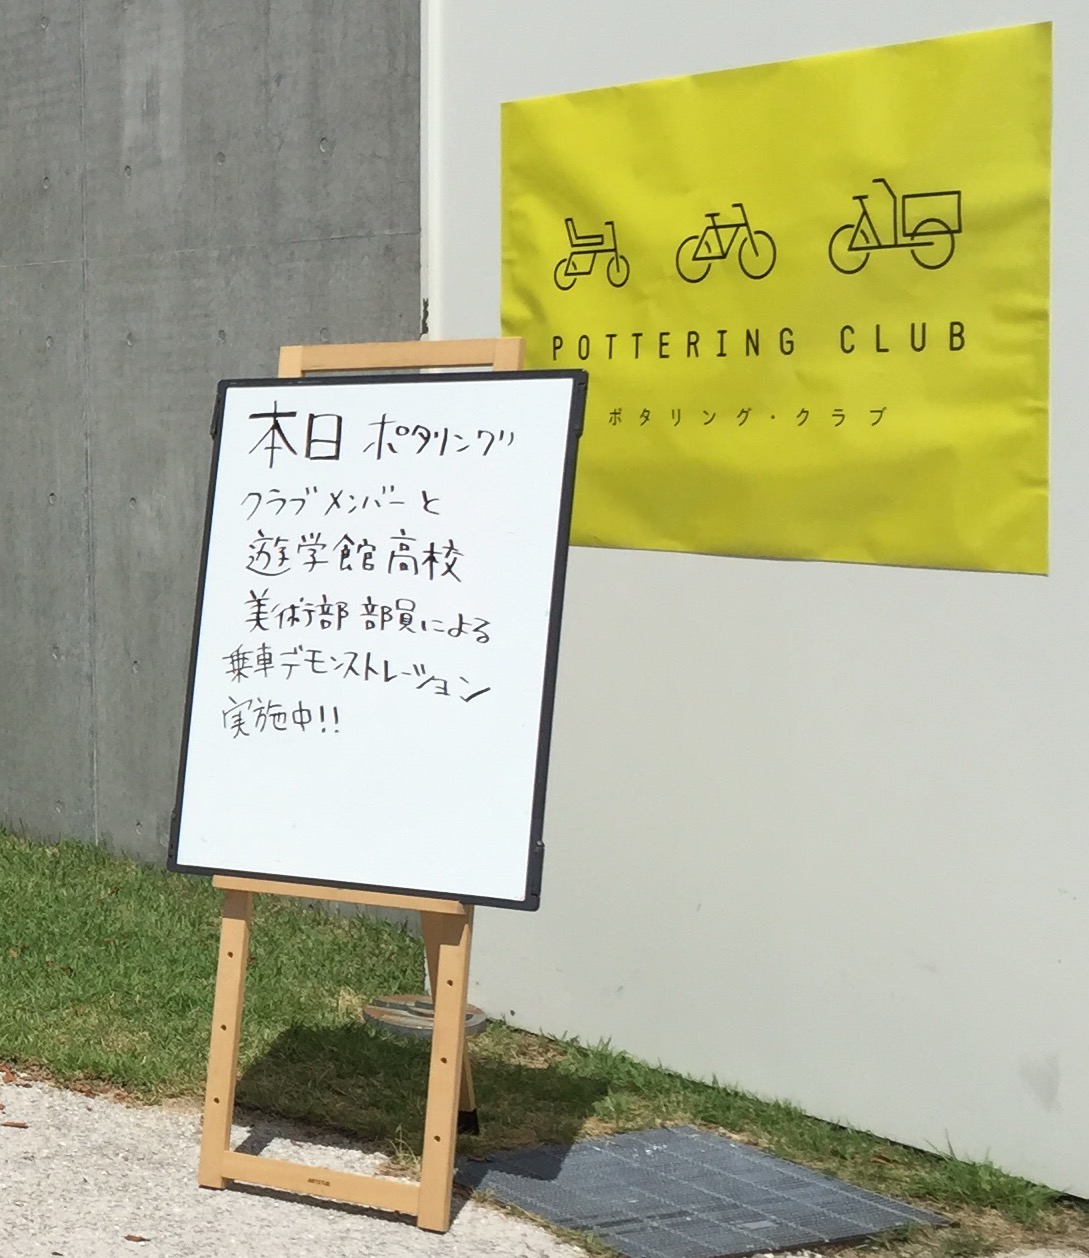 ポルタリング･クラブの旗とイベントの看板